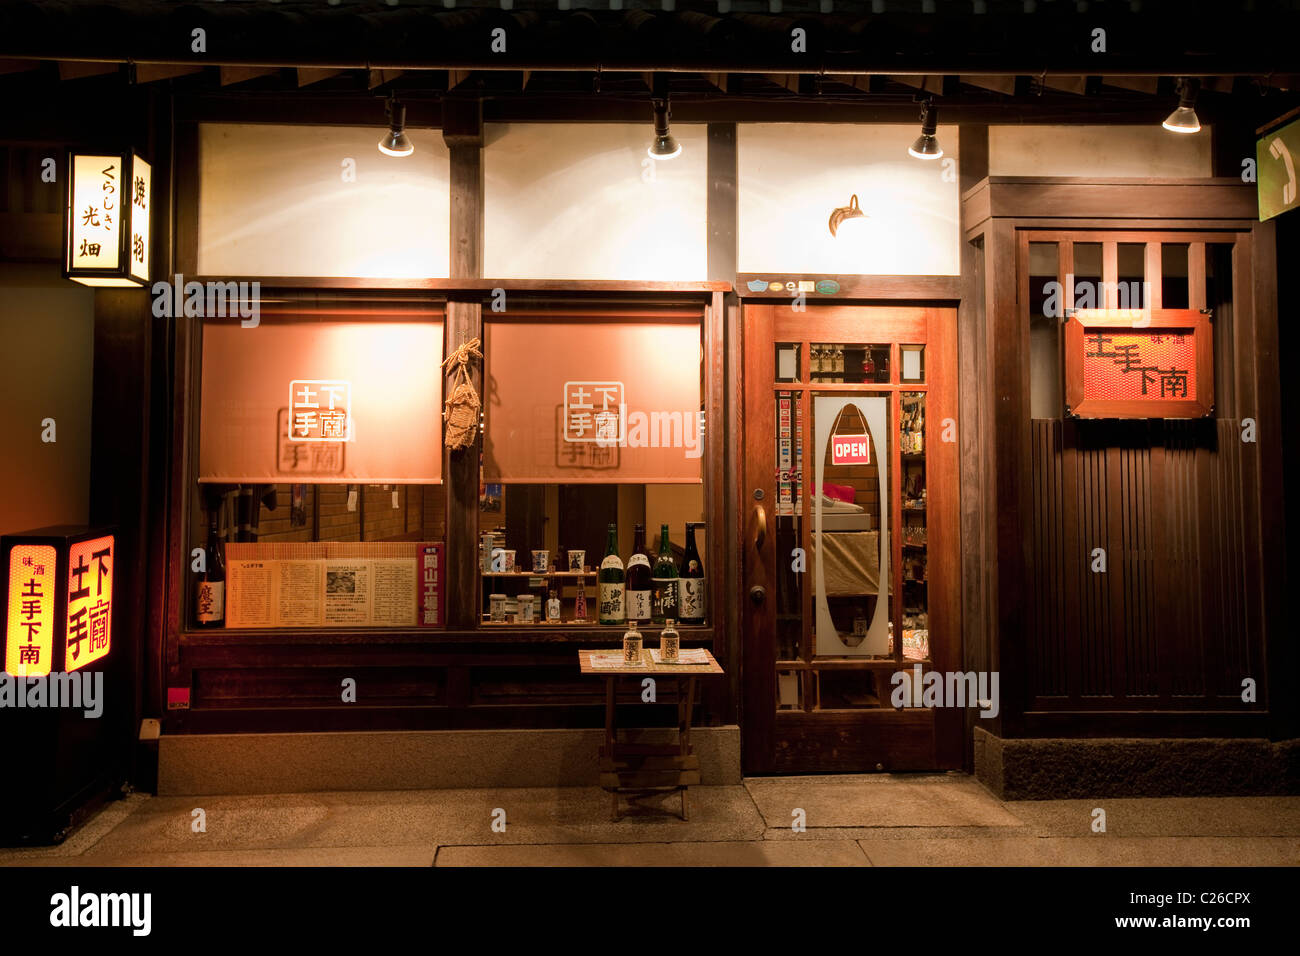 Exterieur des Restaurant mit lokal gebrauten Sake (Reiswein) Flaschen im Fenster im historischen Grachtenviertel Bikan in der Nacht. Stockfoto